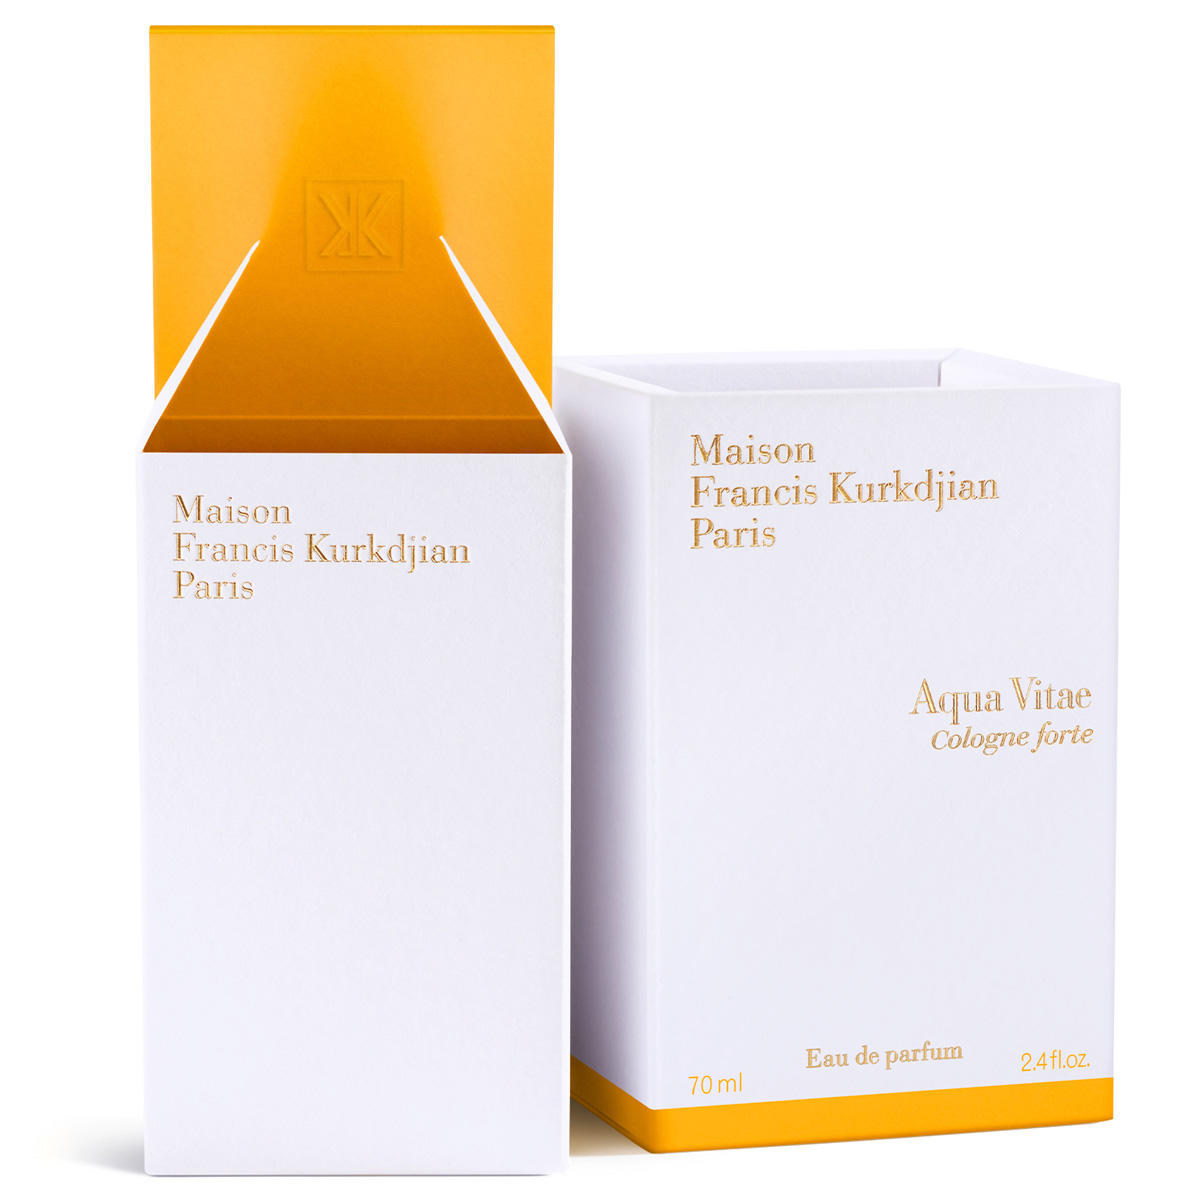 Maison Francis Kurkdjian Paris Aqua Vitae Cologne forte Eau de Parfum



 70 ml - 4